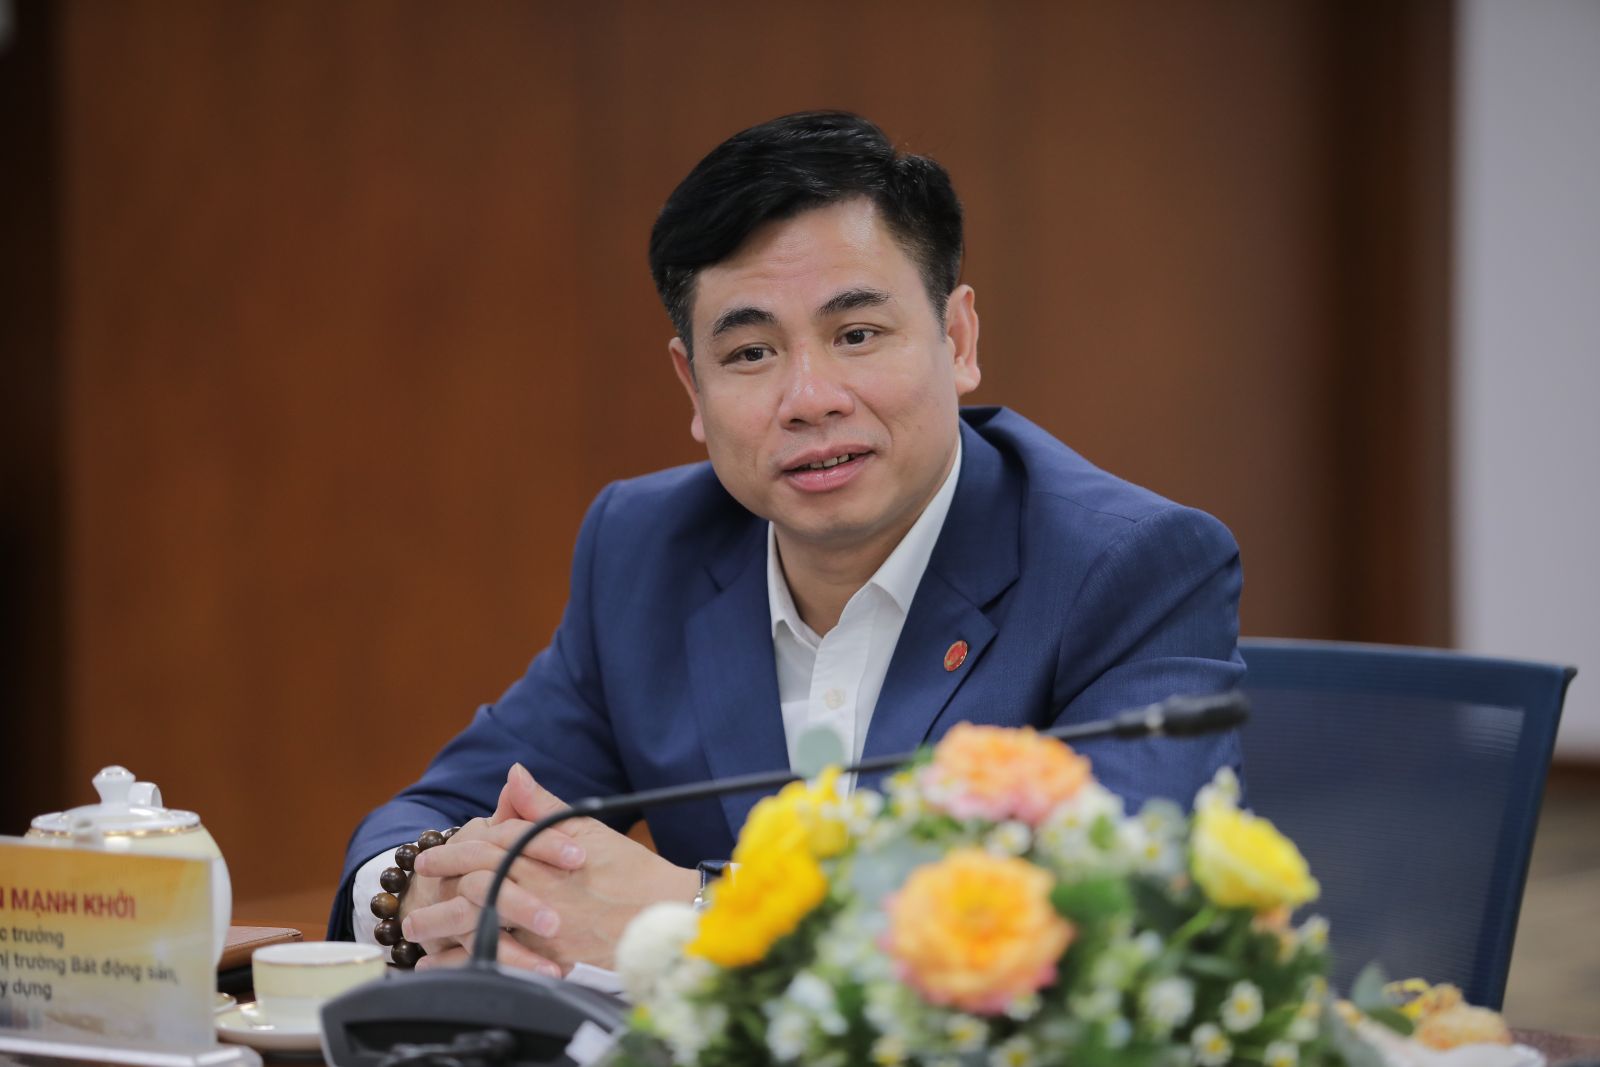 Ông Nguyễn Mạnh Khởi, Phó Cục trưởng Cục Quản lý nhà và thị trường bất động sản - Bộ Xây dựng